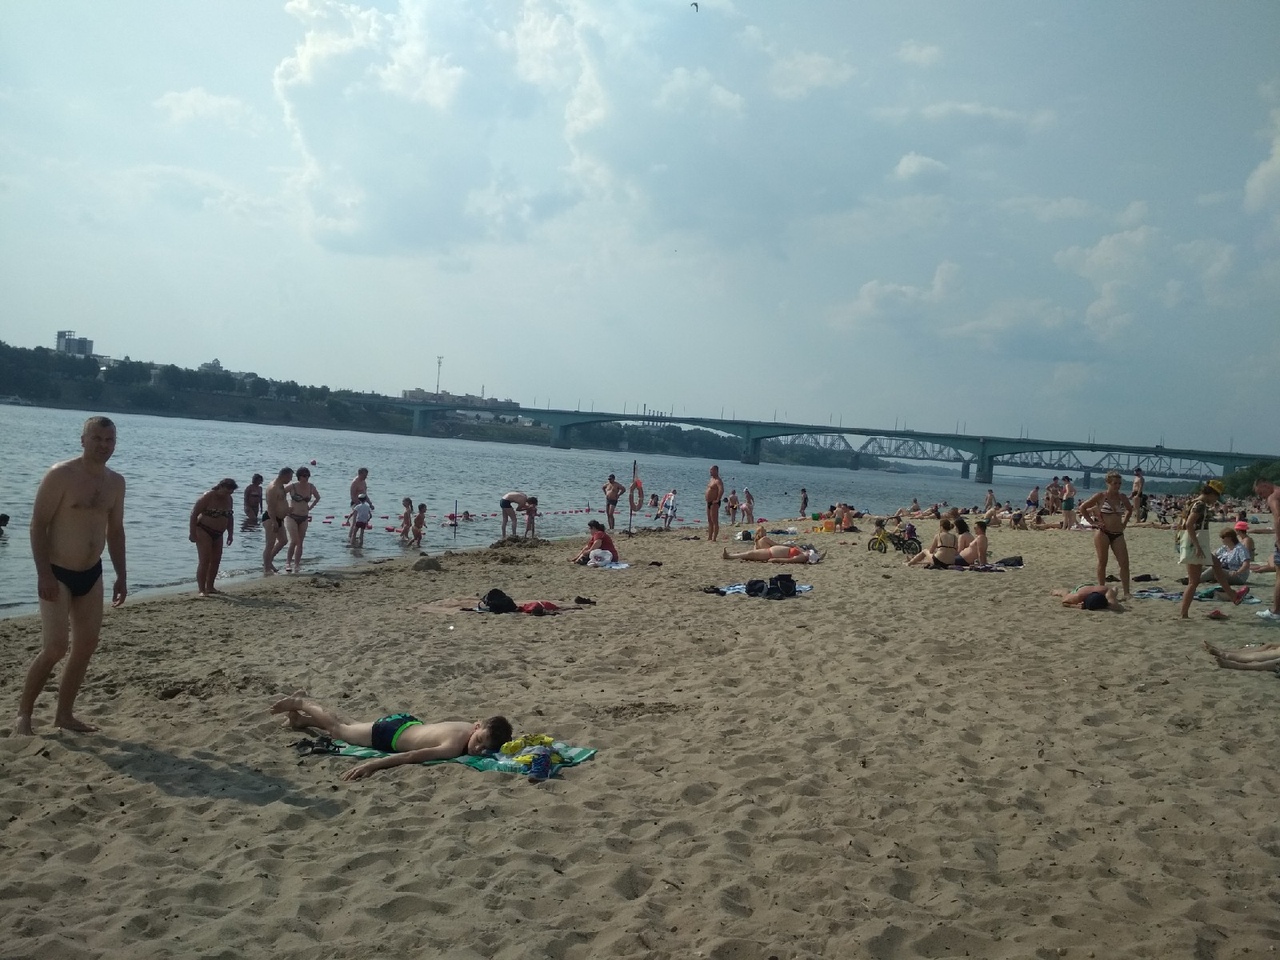  В Ярославле разрешили купаться всего на одном пляже